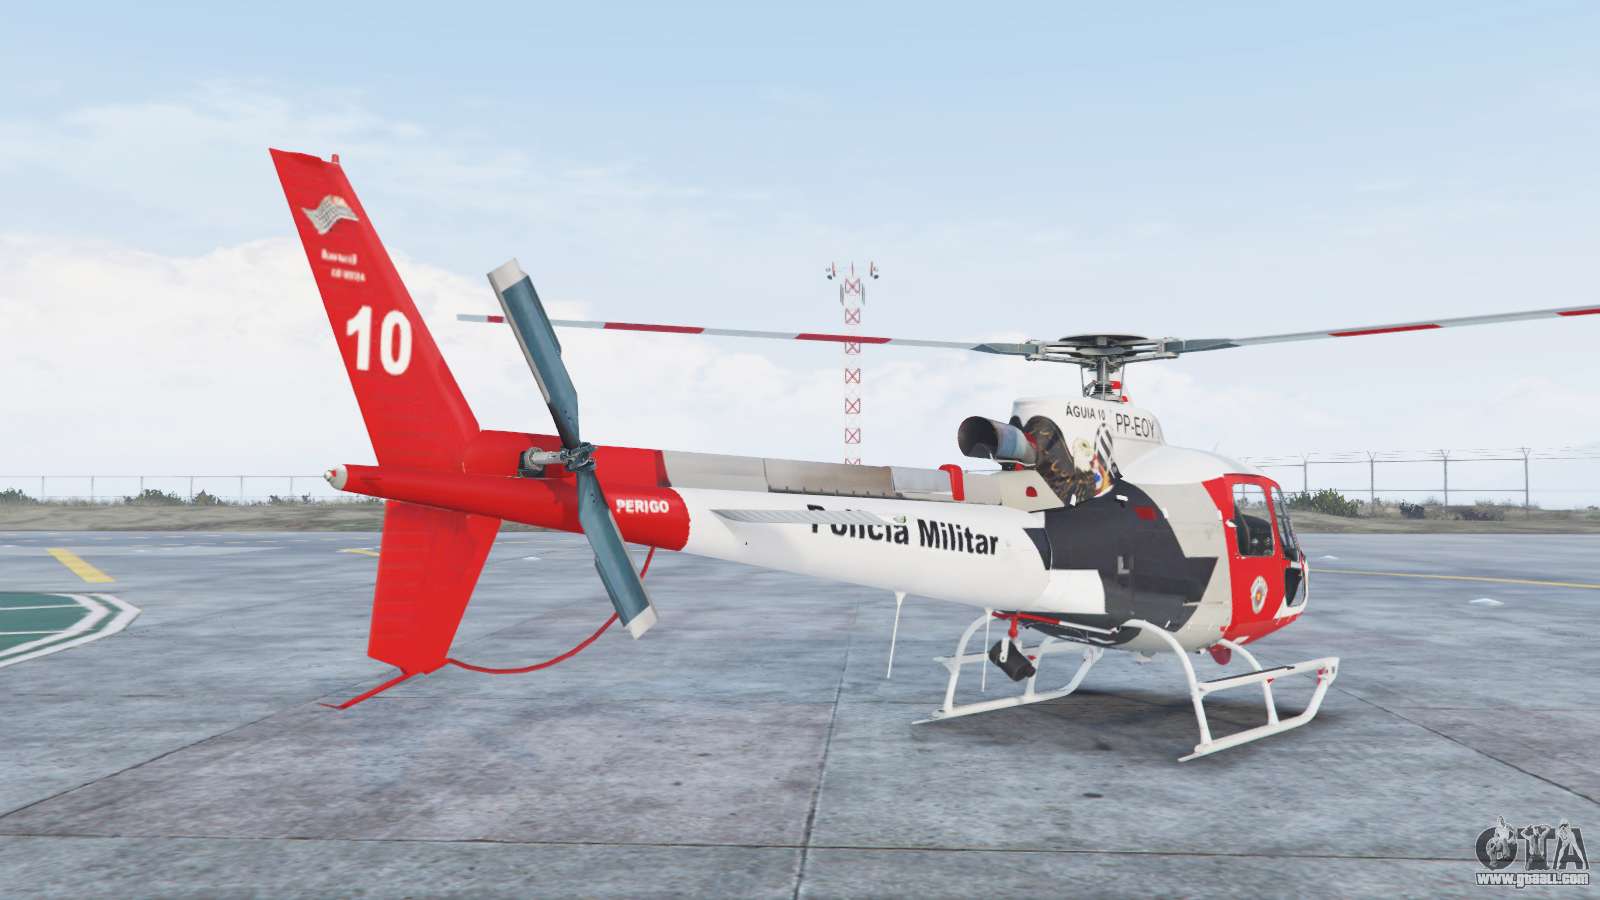 GTA V: Melhores locais para encontrar helicópteros, incluindo o da polícia